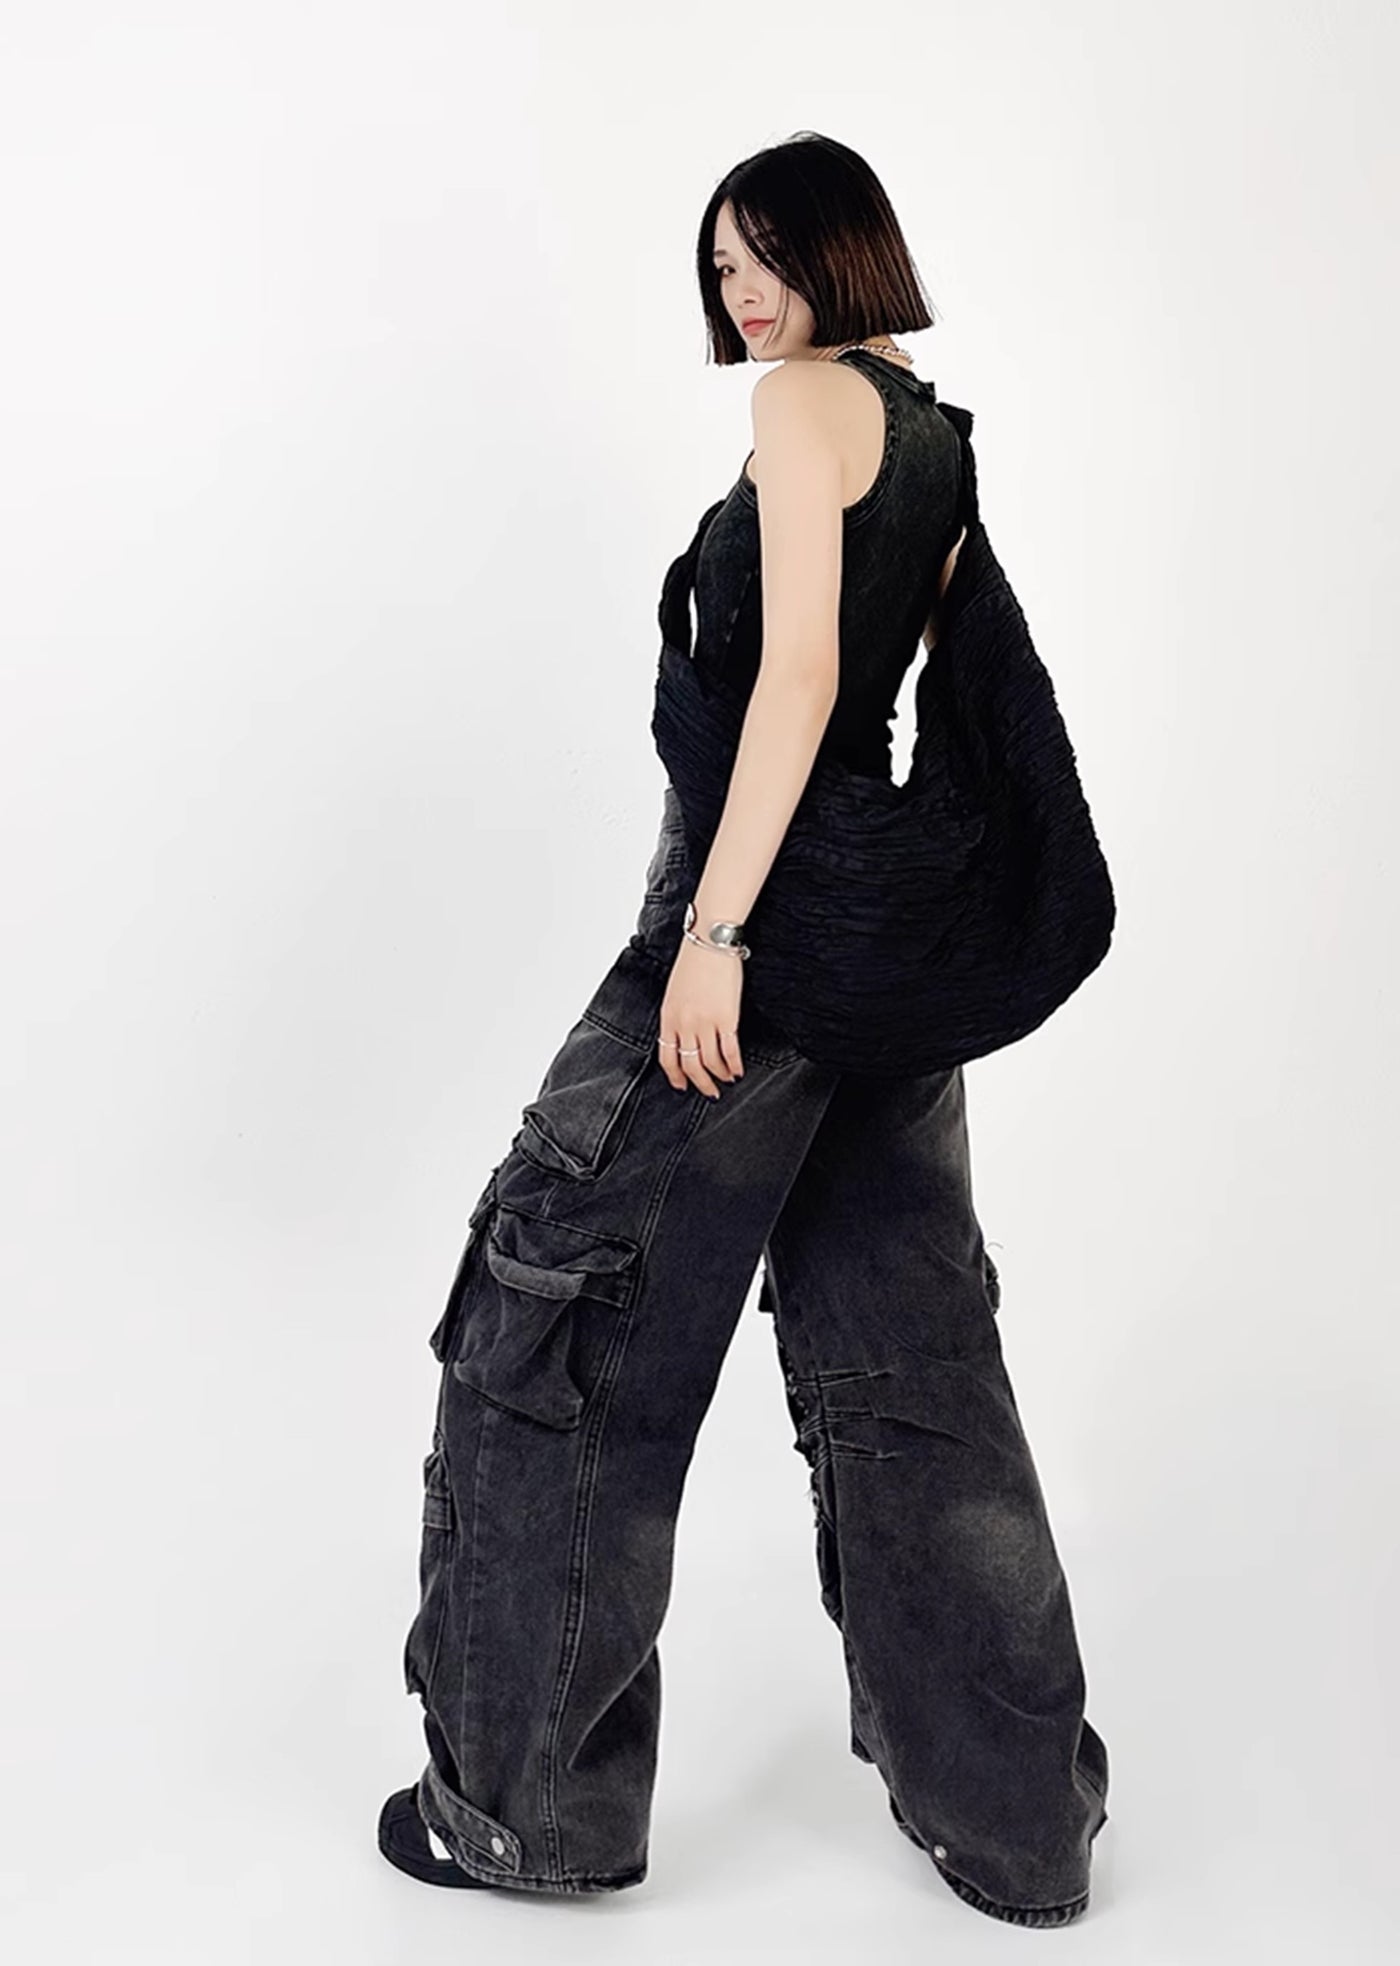 [4/29 New] Countless pocket design dull color wide bold denim pants HL3040